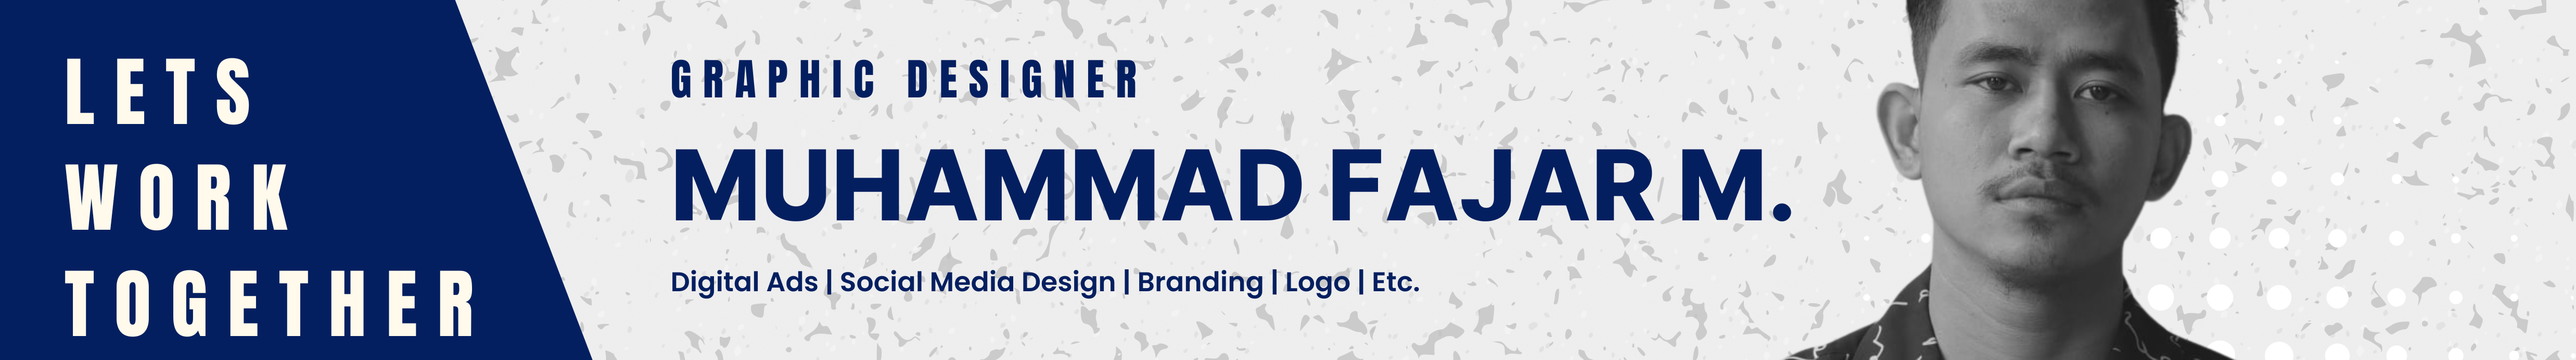 Muhammad Fajar Maulana's profile banner